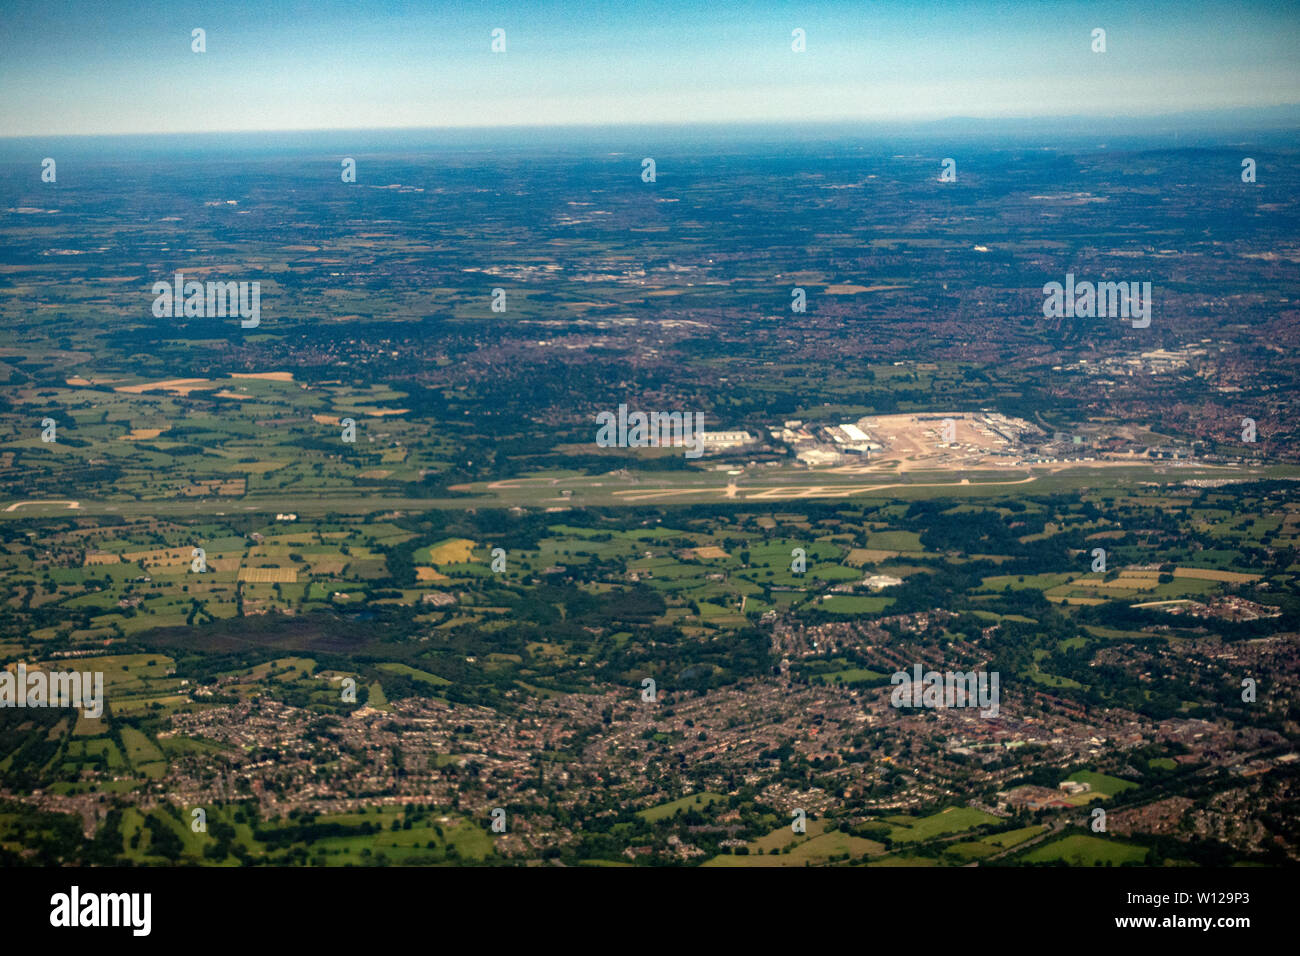 Fotografia aerea dell'aeroporto di Manchester dal di sopra con i piloti viewpoint Foto Stock